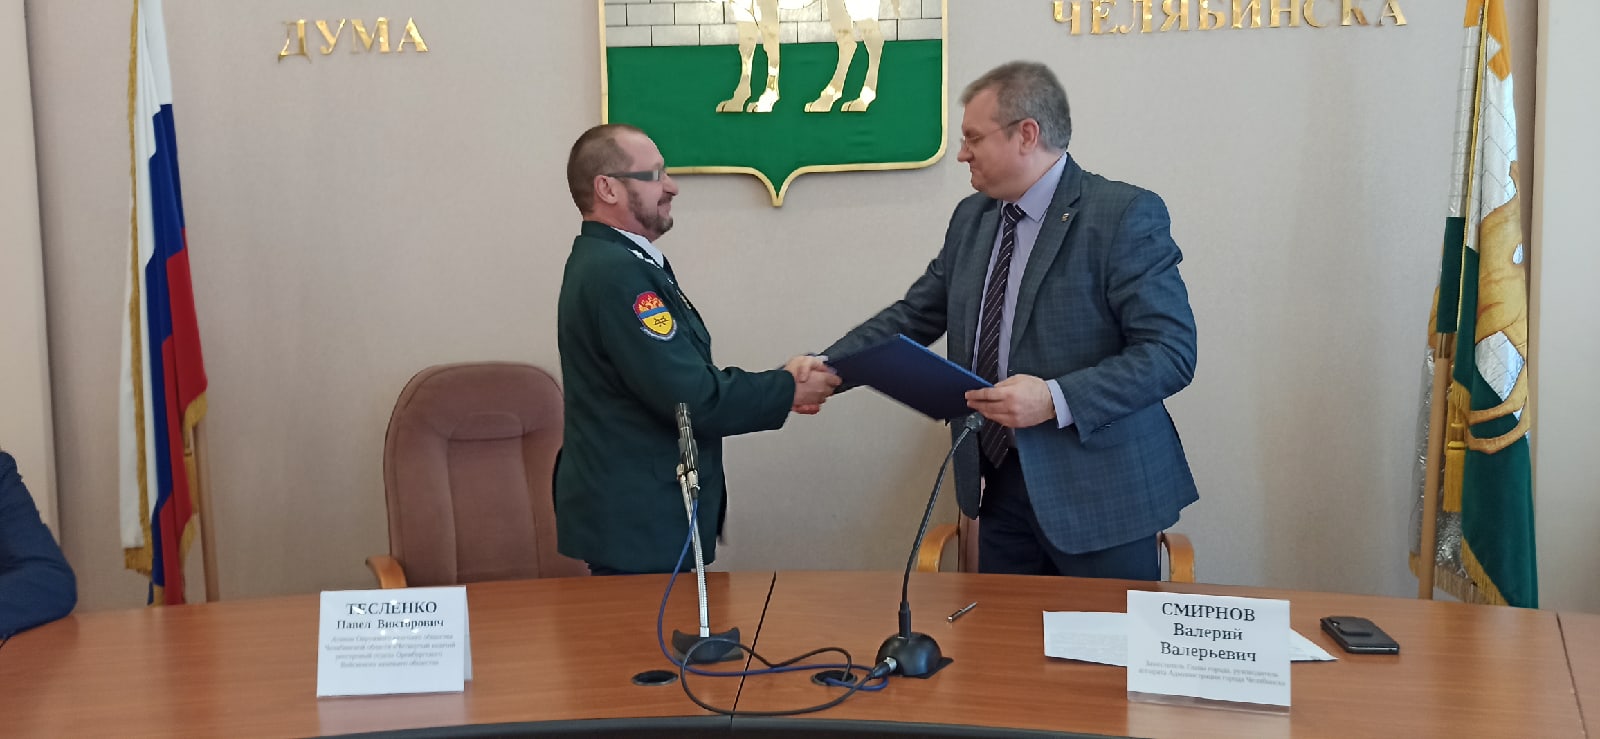 Казаки Четвертого отдела подписали соглашение с администрацией г. Челябинска